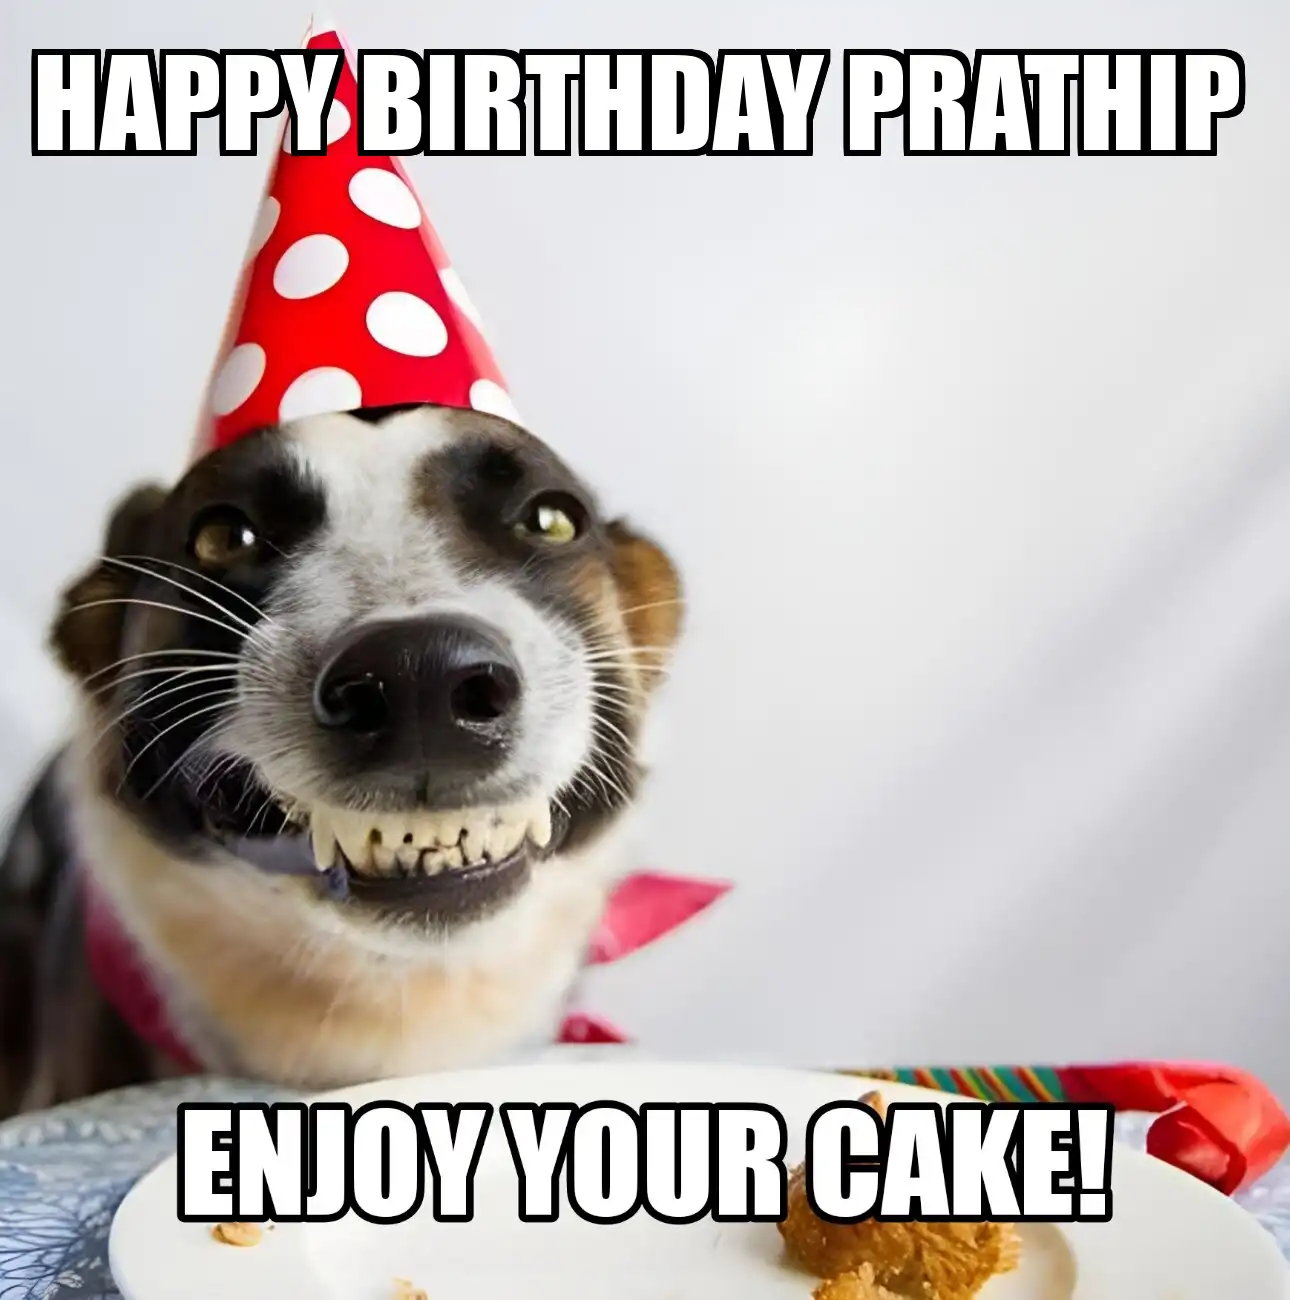 Happy Birthday Prathip Enjoy Your Cake Dog Meme